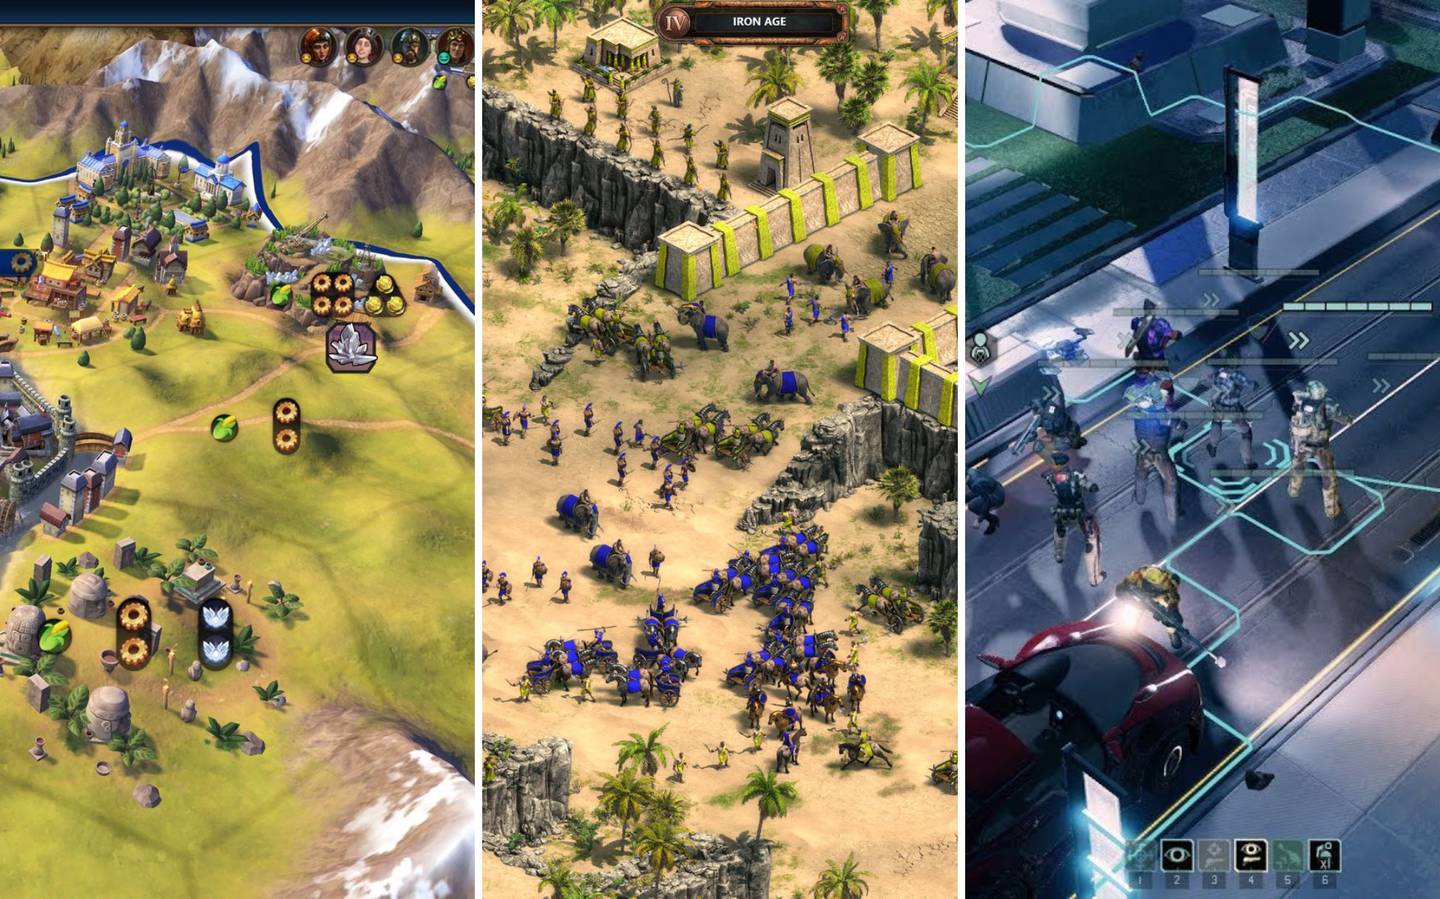 Los juegos de estrategia como Age of Empires o Sid Meier's Civilization están al borde la extinción. Crédito: Steam.